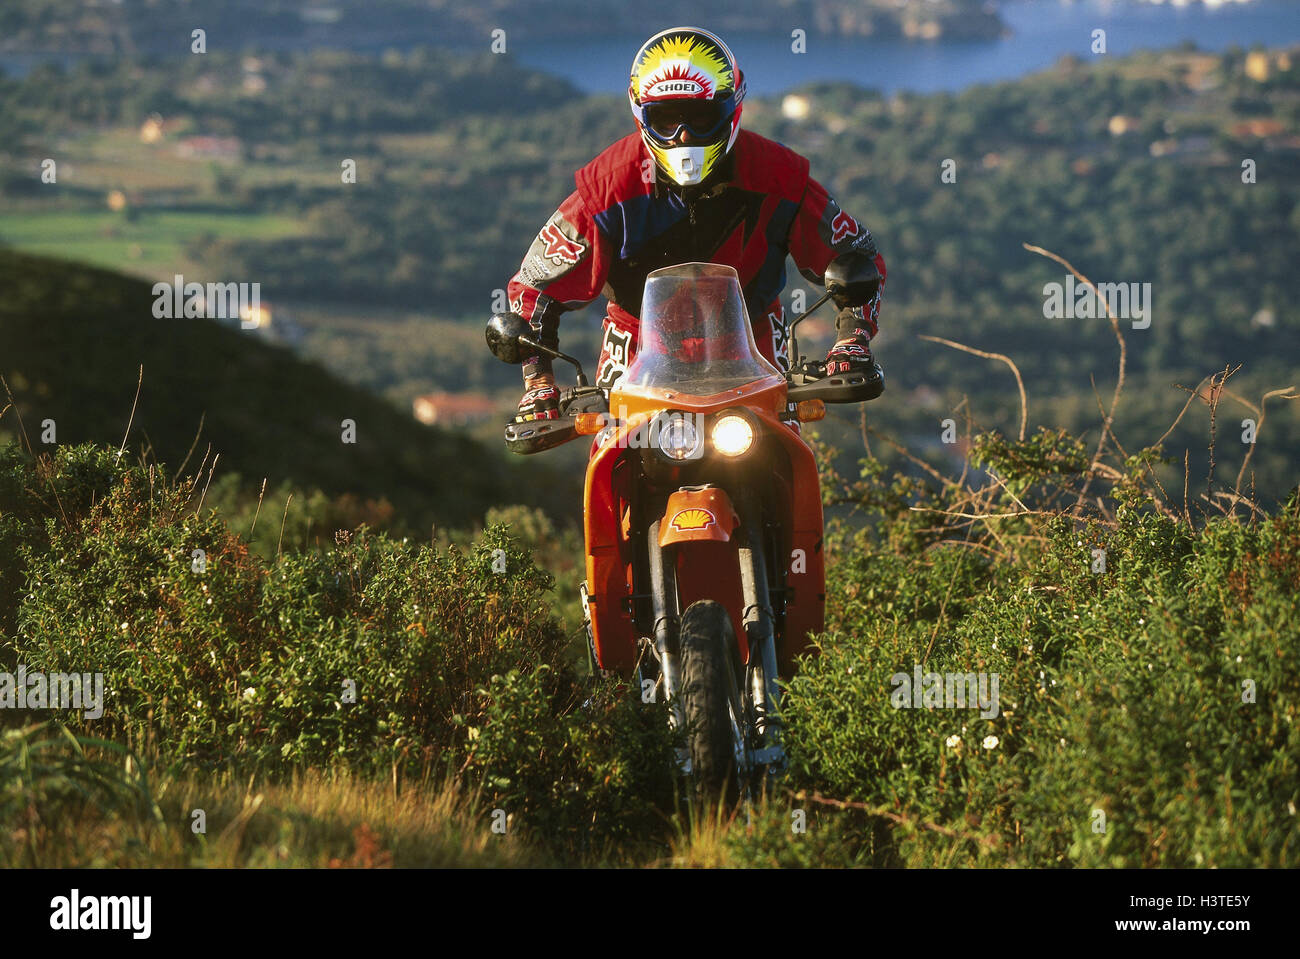 Moto cross driver, coastal scenery Stock Photo